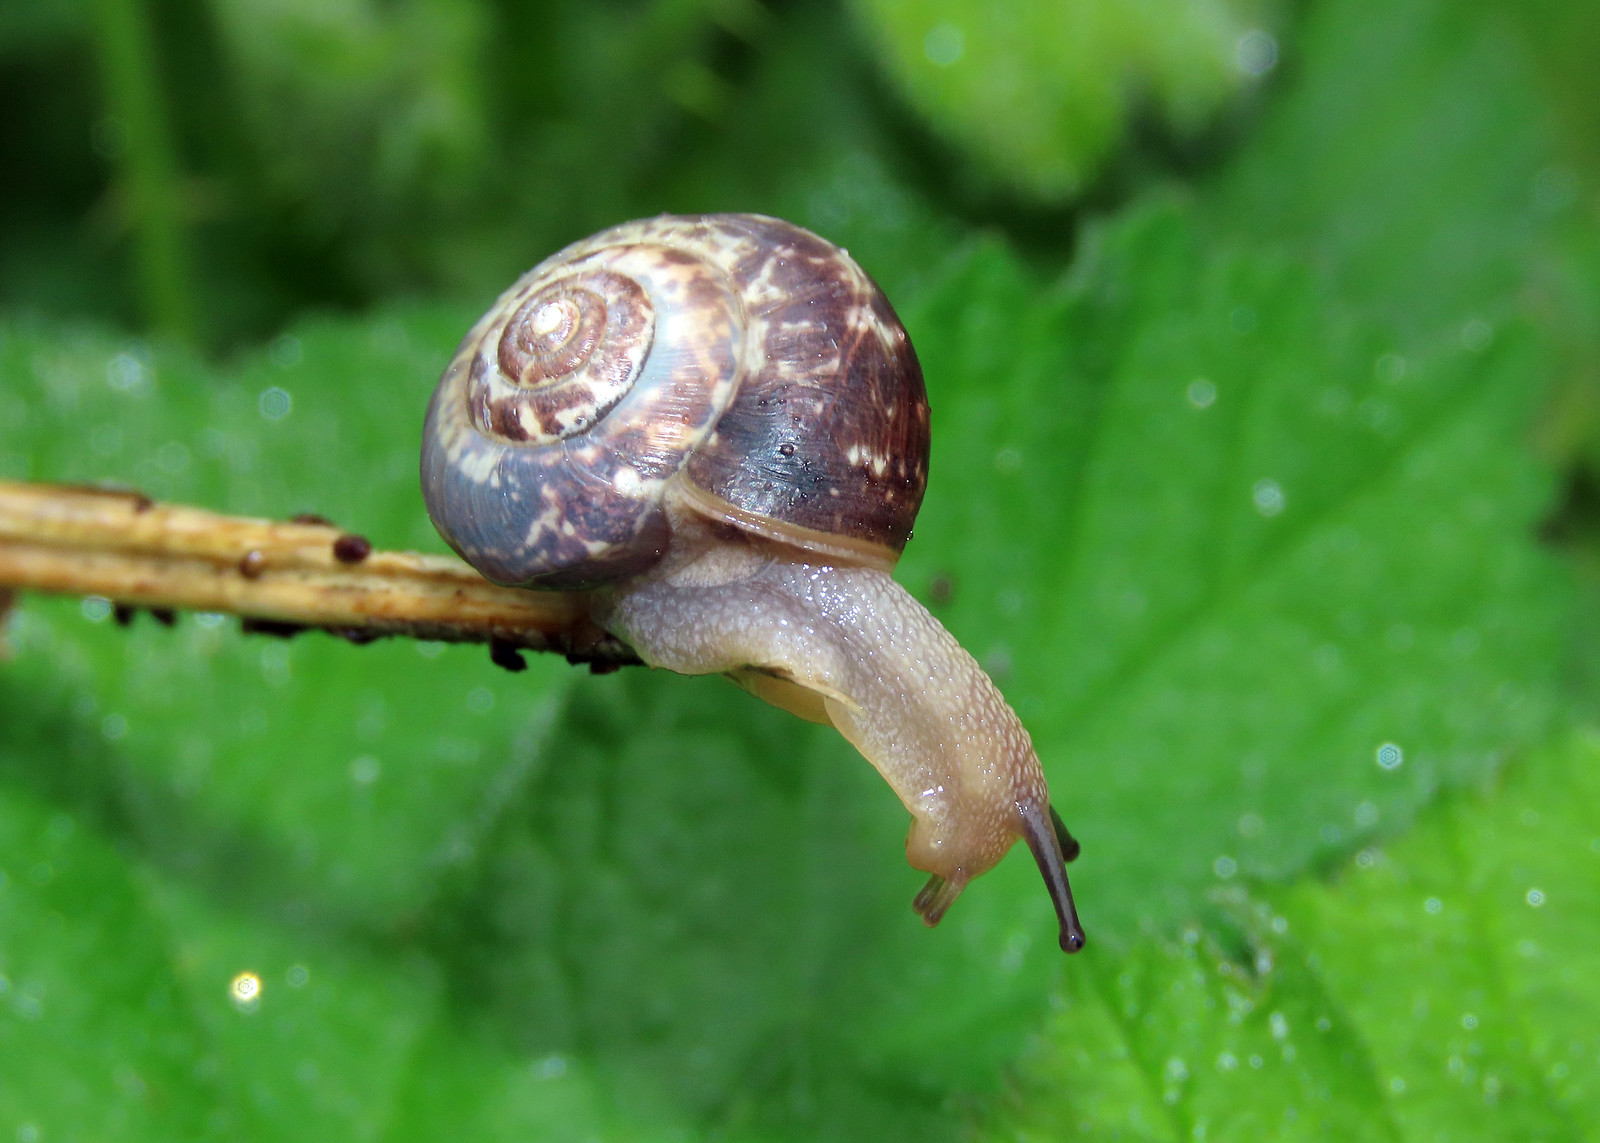 Kentish Snail - Monacha cantiana